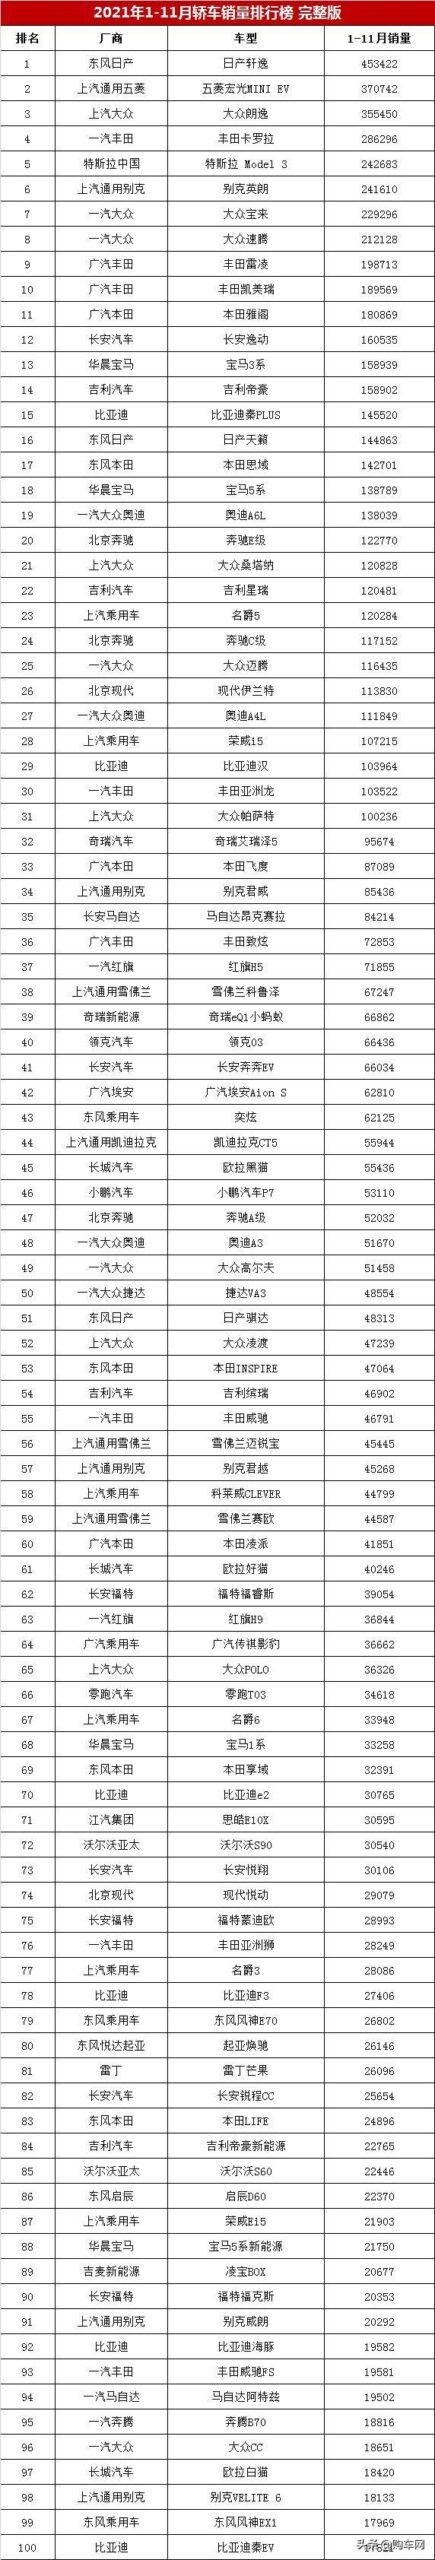 中国小汽车销售排行榜(吉利10万以内轿车)插图8